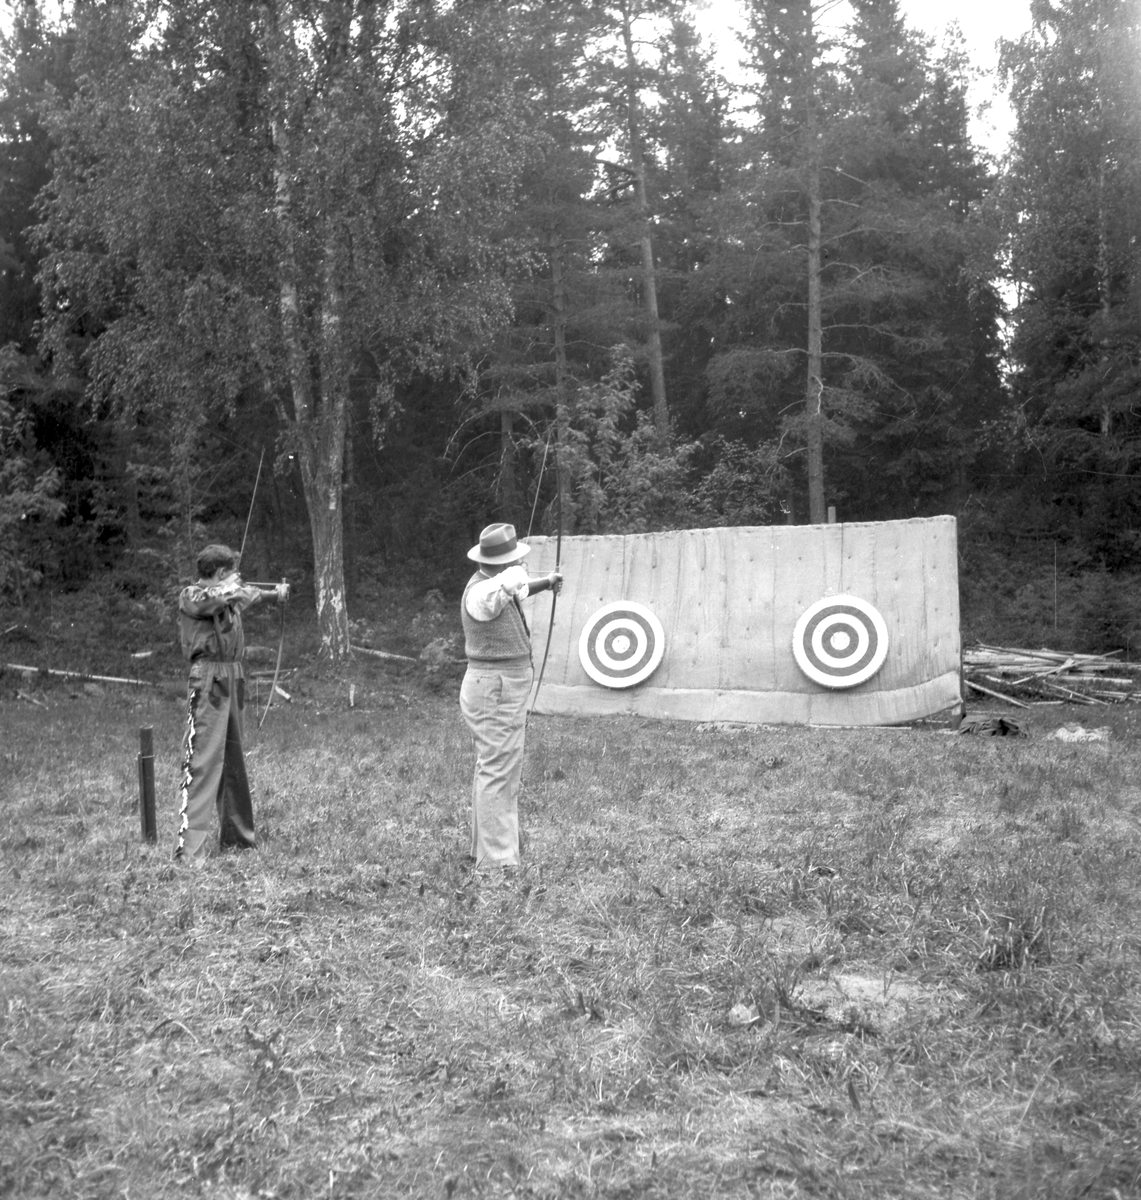 Furuviksparken invigdes pingstdagen 1936.

Nöjesfältet, badplatsen Sandvik och djurparken gjordes iordning.

Bågskytte, vid Sandvik







